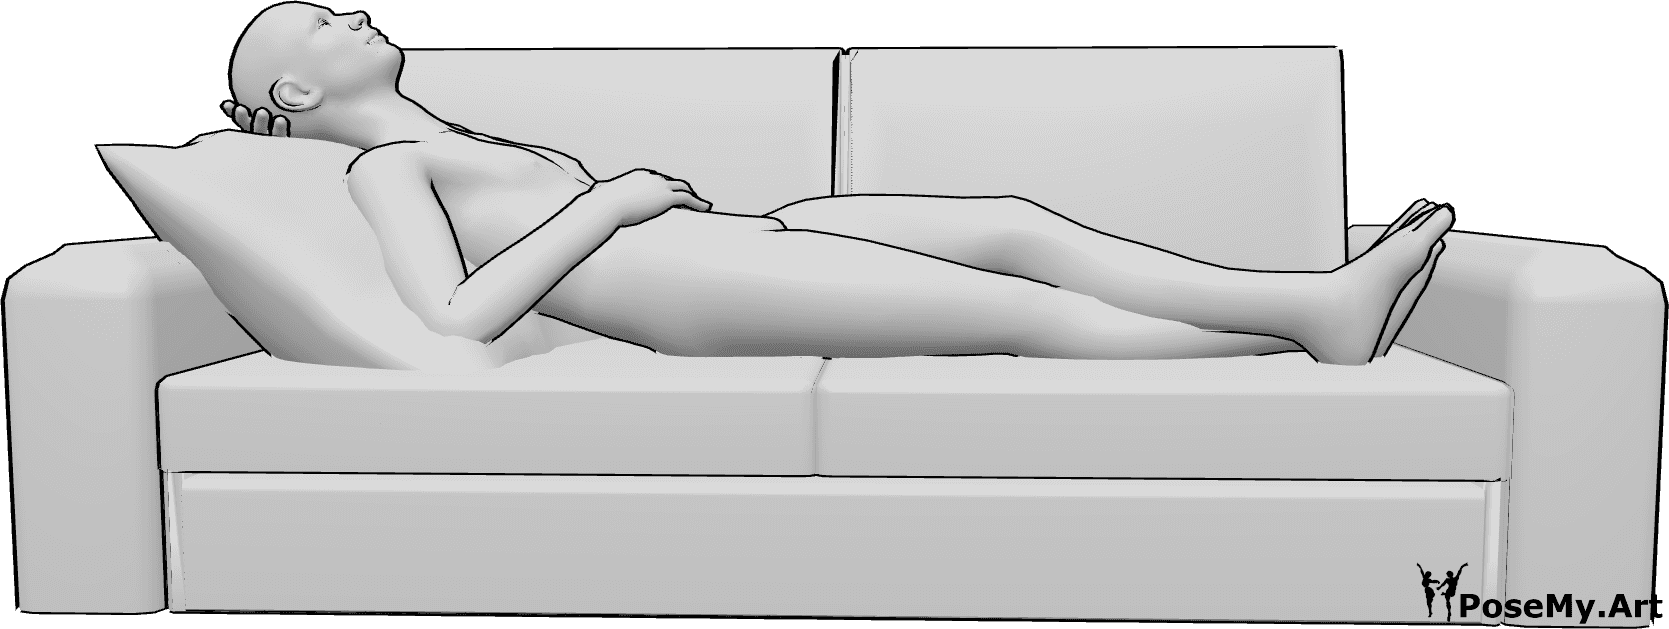 Riferimento alle pose- Uomo in posizione di riposo - L'uomo è sdraiato sul divano e sta riposando, ha le gambe incrociate e guarda verso l'alto.